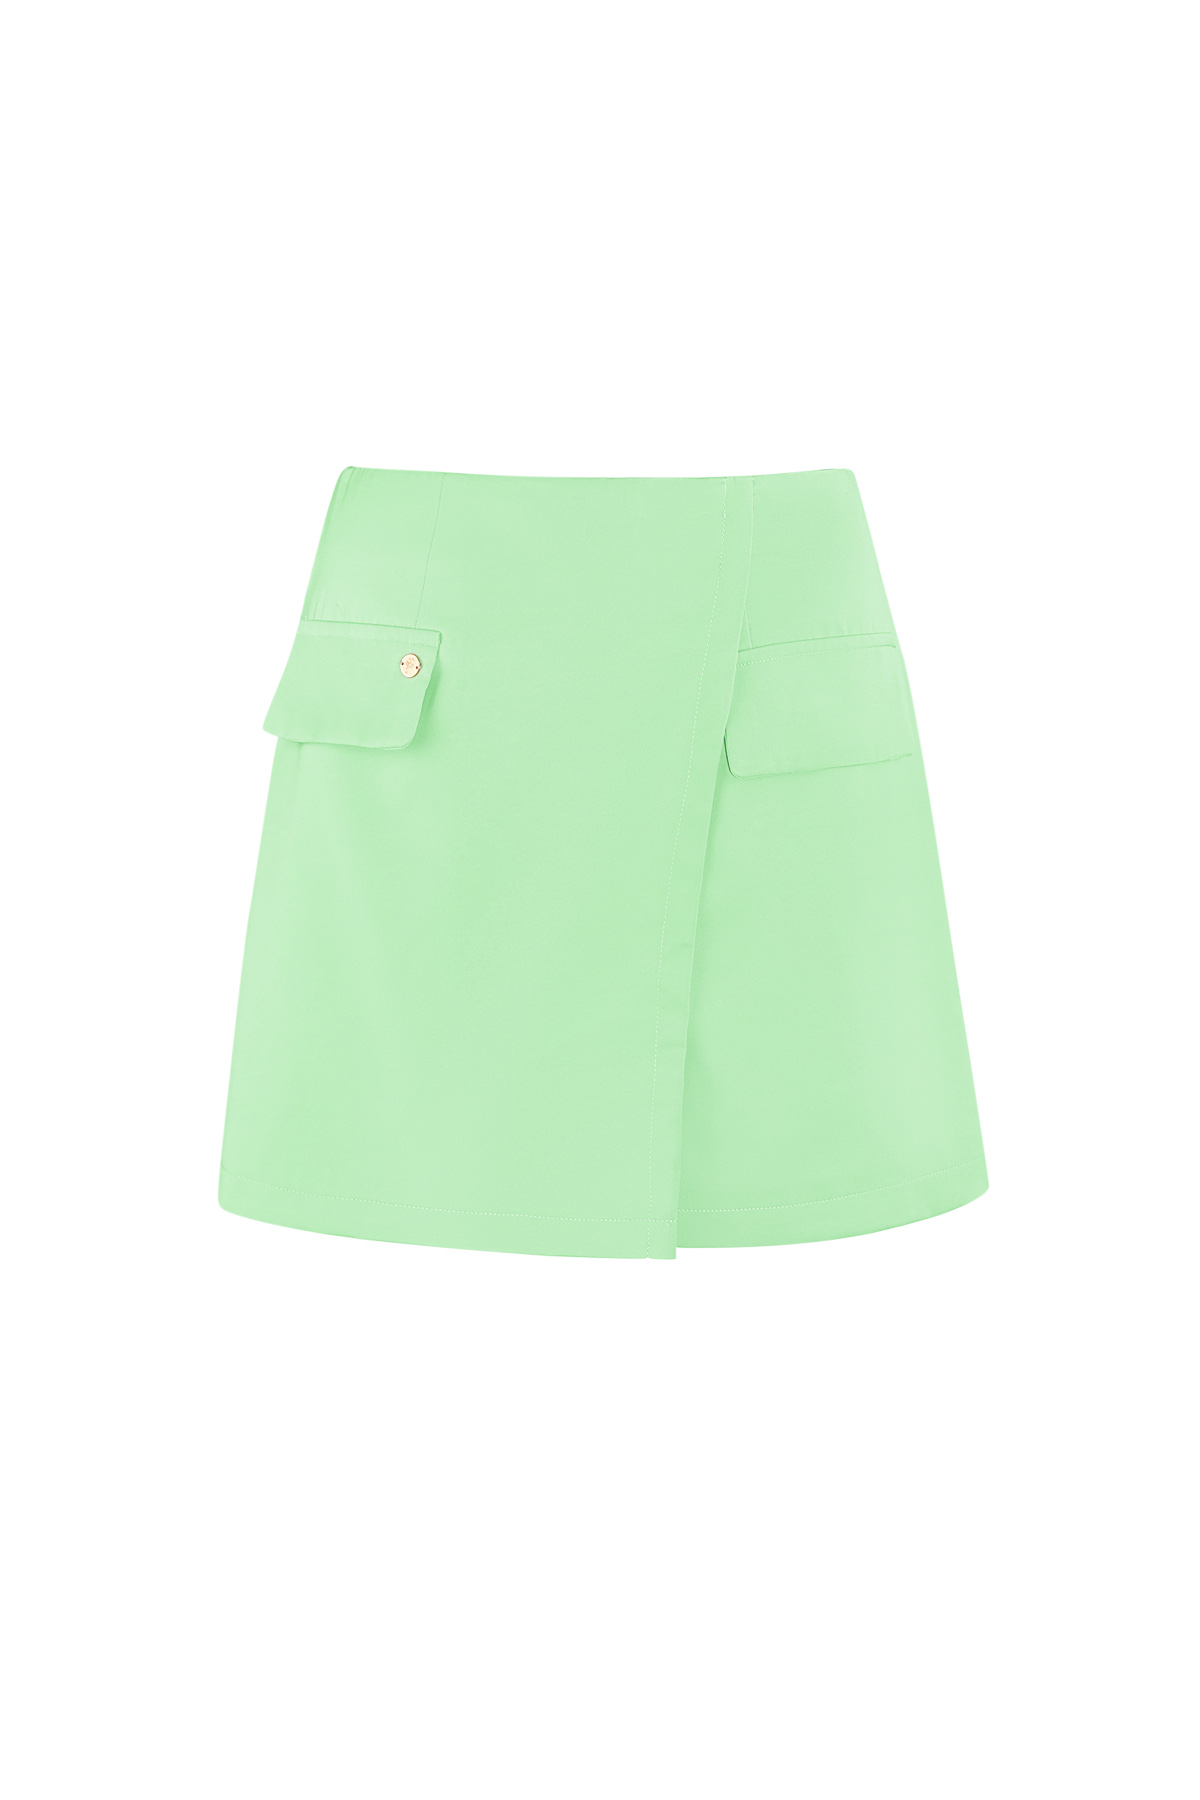 Plain pastel skirt - green